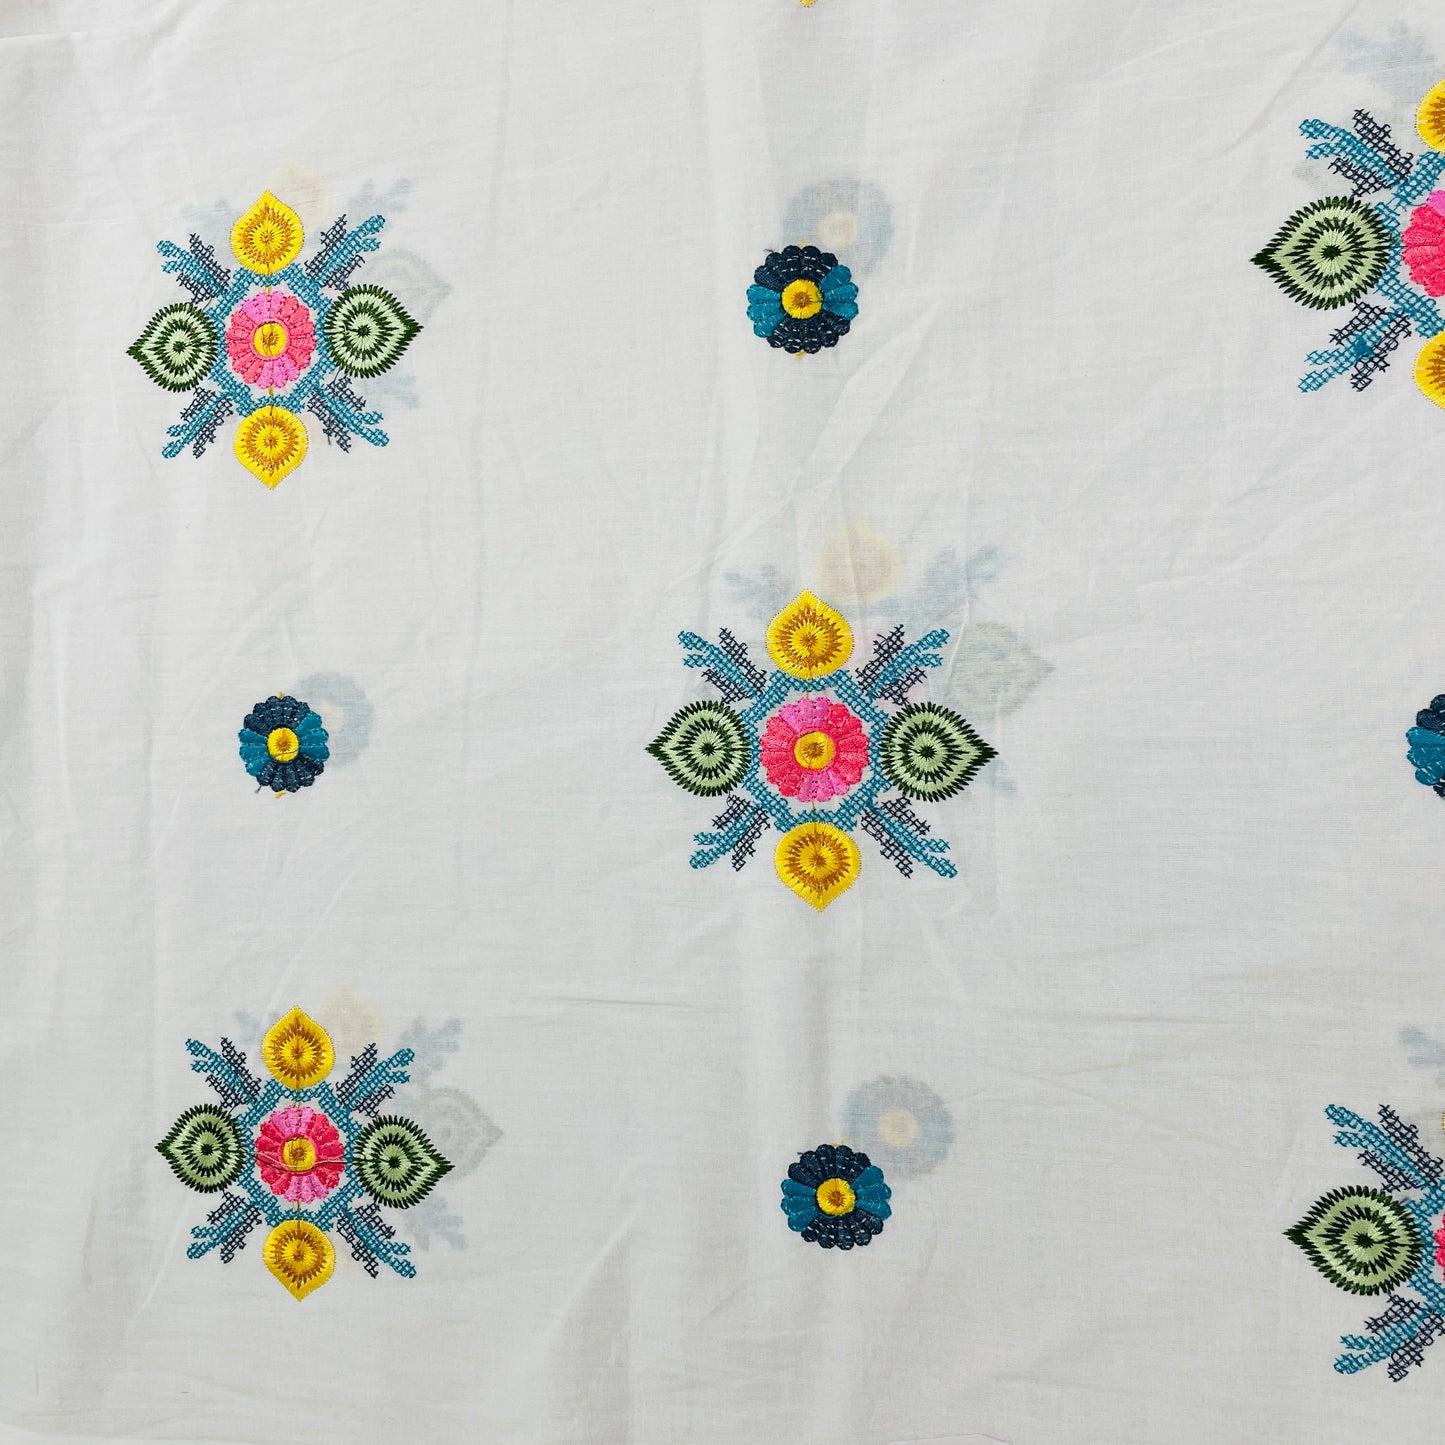 White & Multicolor Floral Thread Embridery Cotton Fabric - TradeUNO